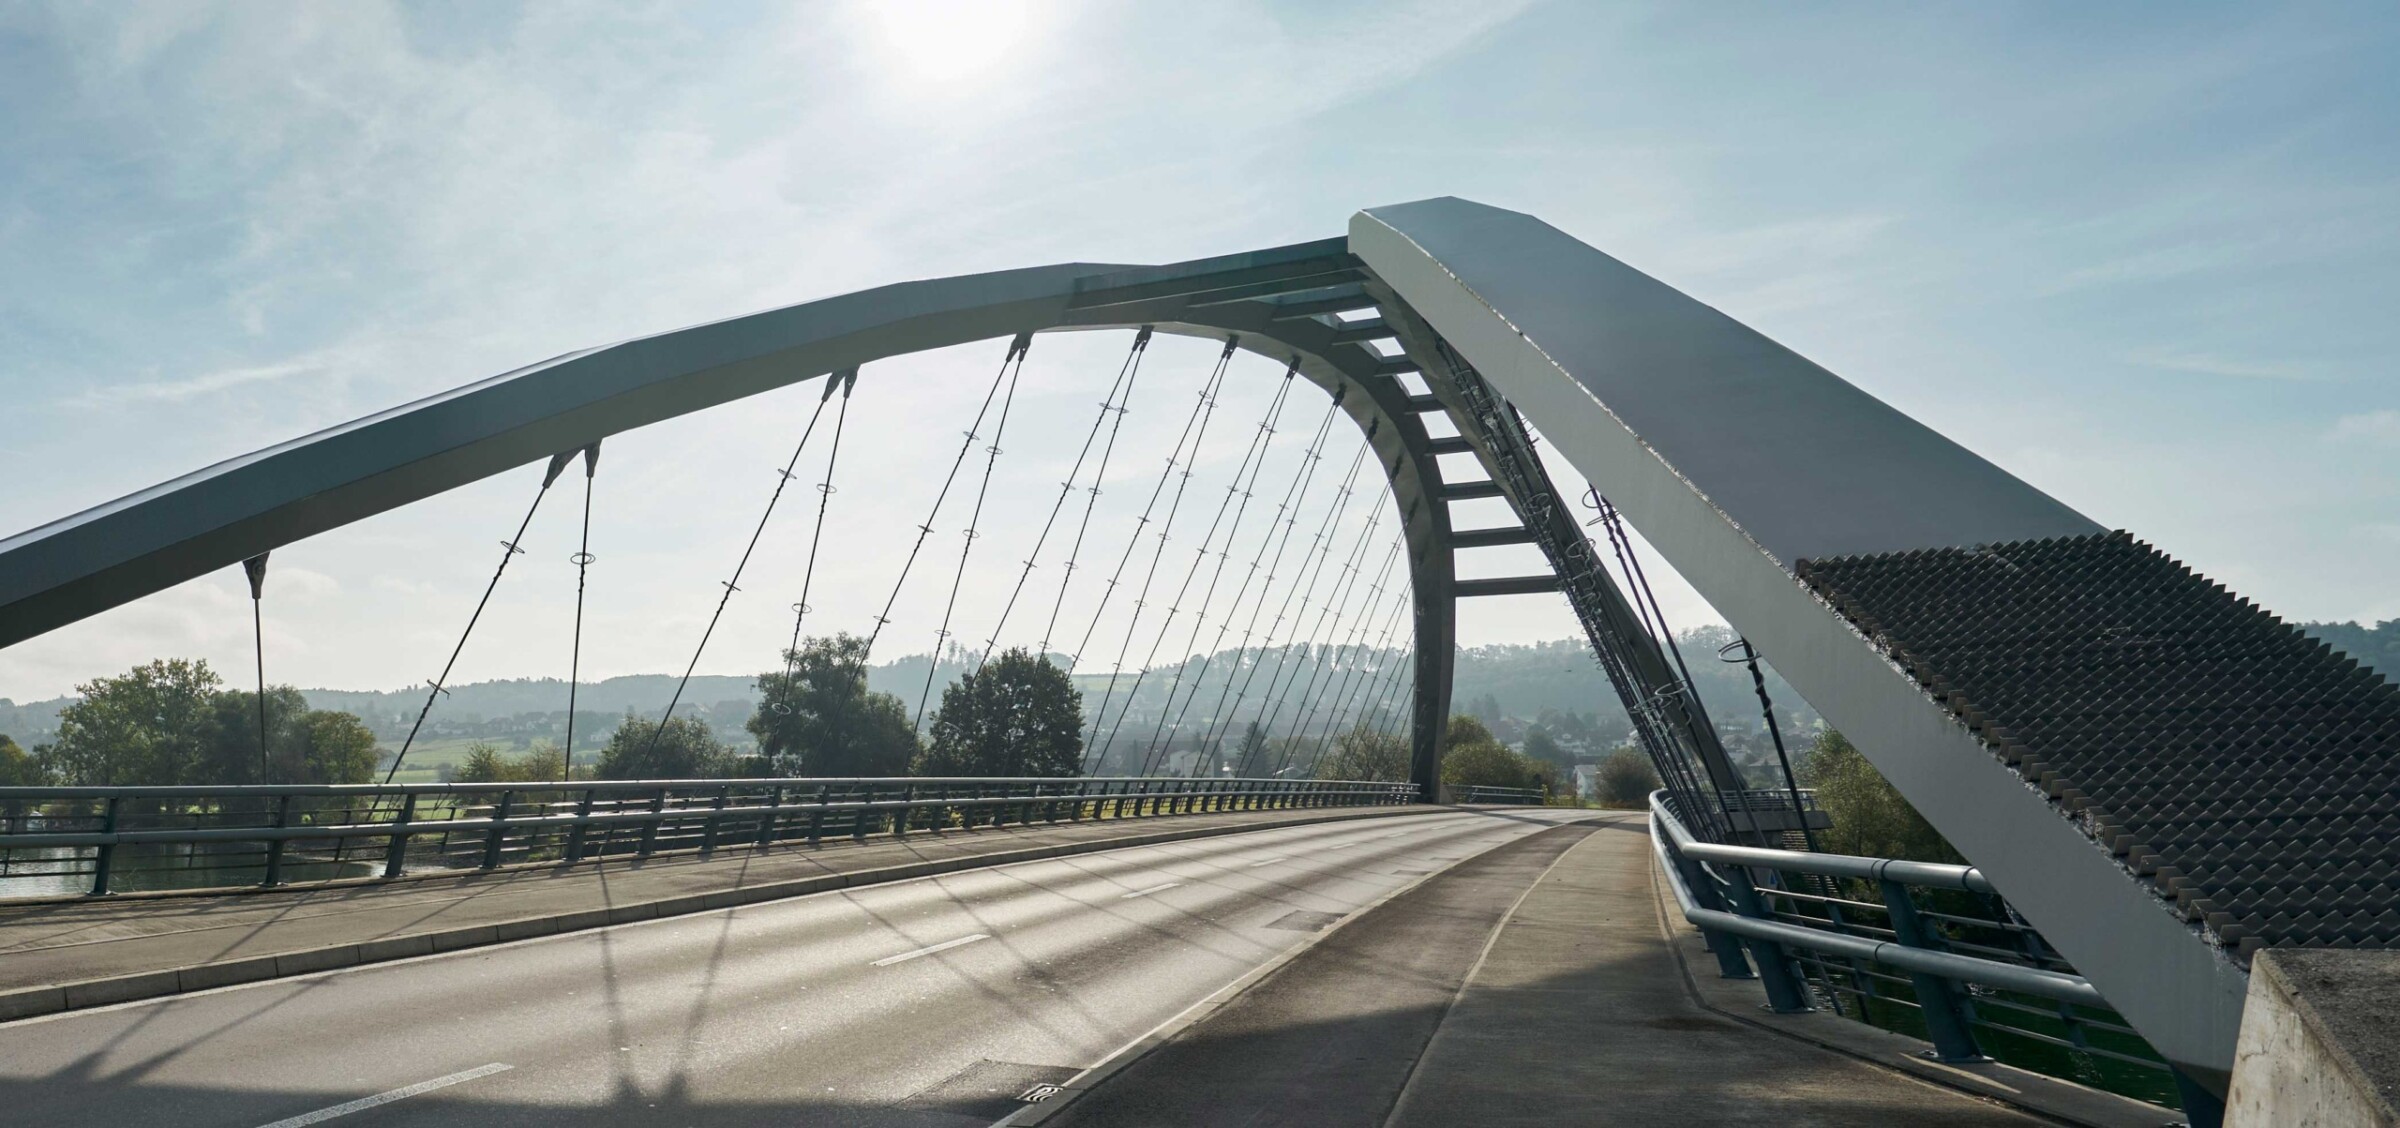 Die im Jahr 1997 fertiggestellte Brücke führt über die Aare und verbindet die Kantone Bern und Solothurn.